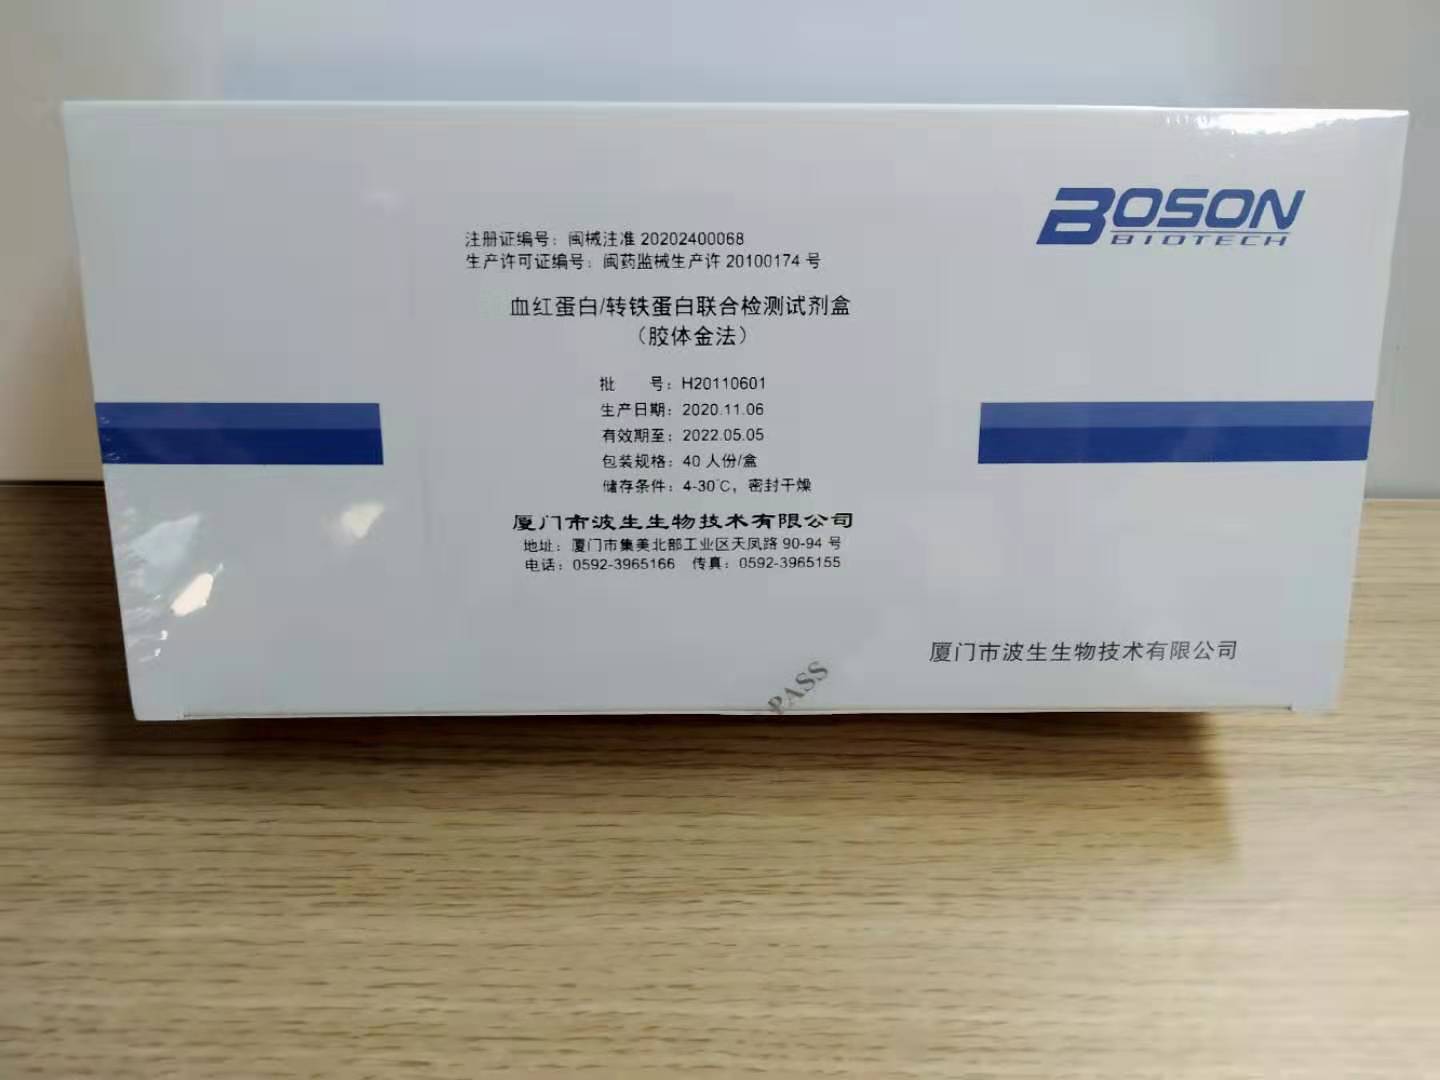 【波生】血红蛋白/转铁蛋白联合检测试剂盒(胶体金法)-云医购